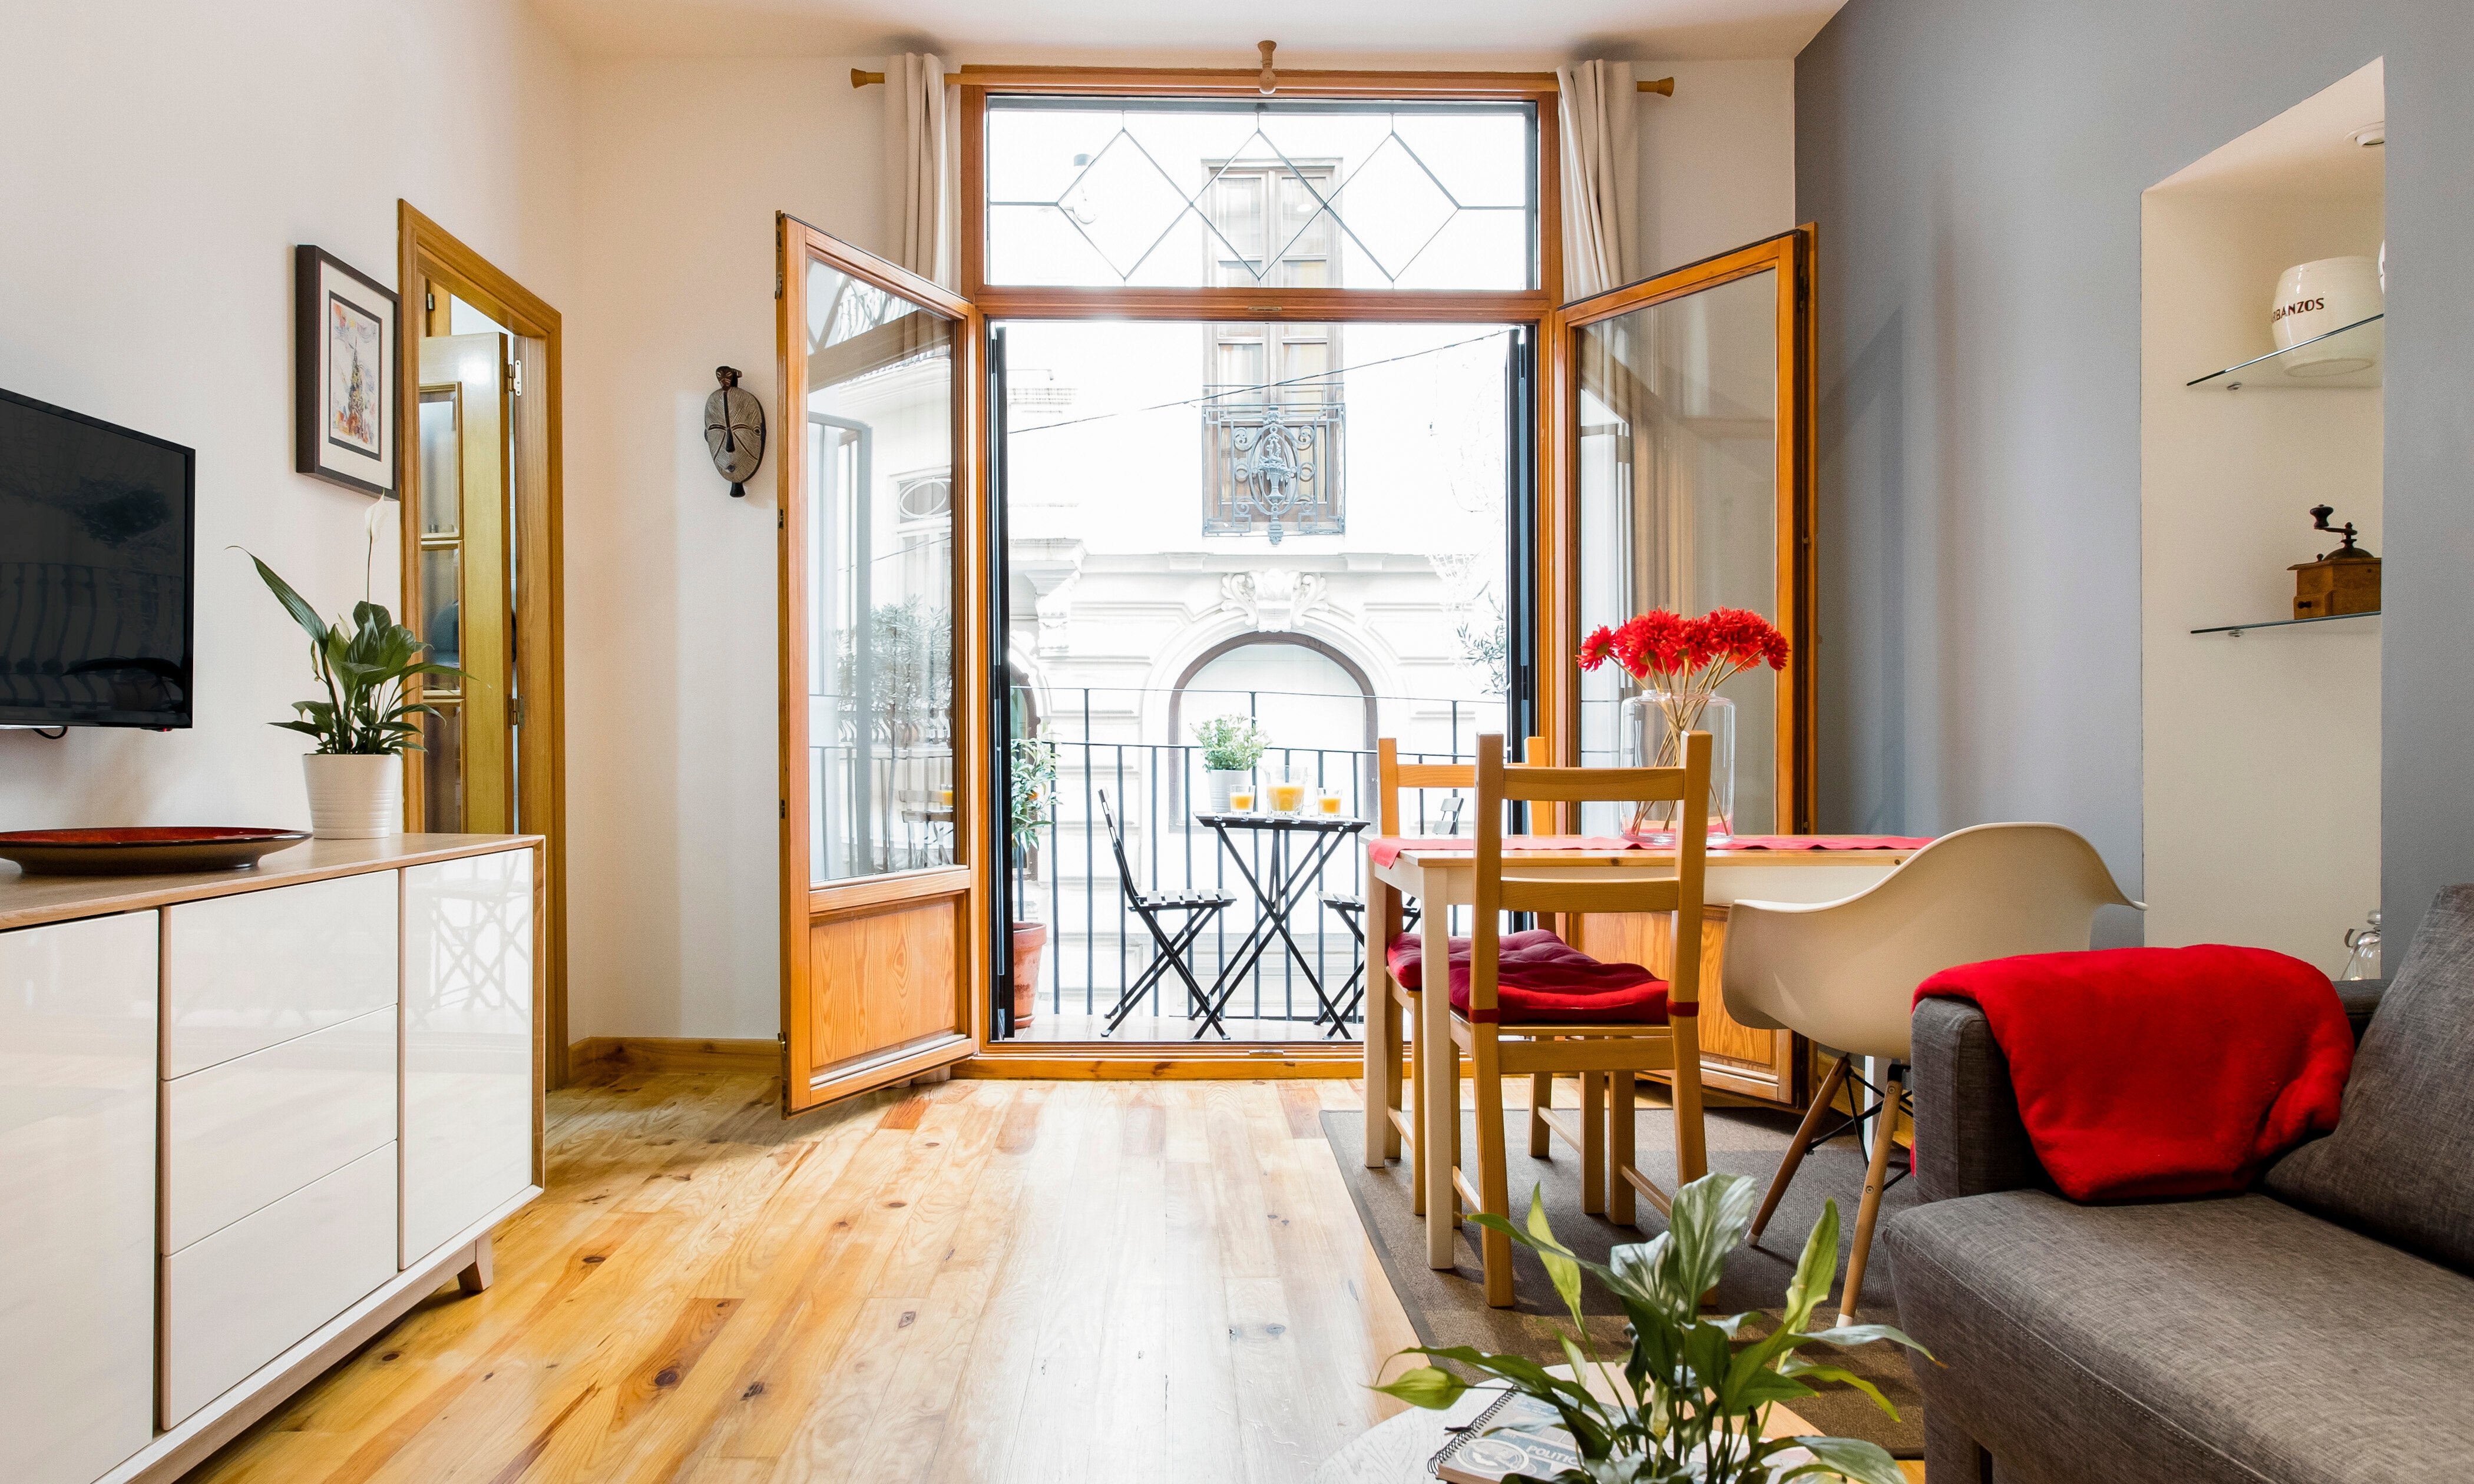 Las reservas en Airbnb en barrios de Barcelona sin hoteles reportaron 95 millones a los anfitriones